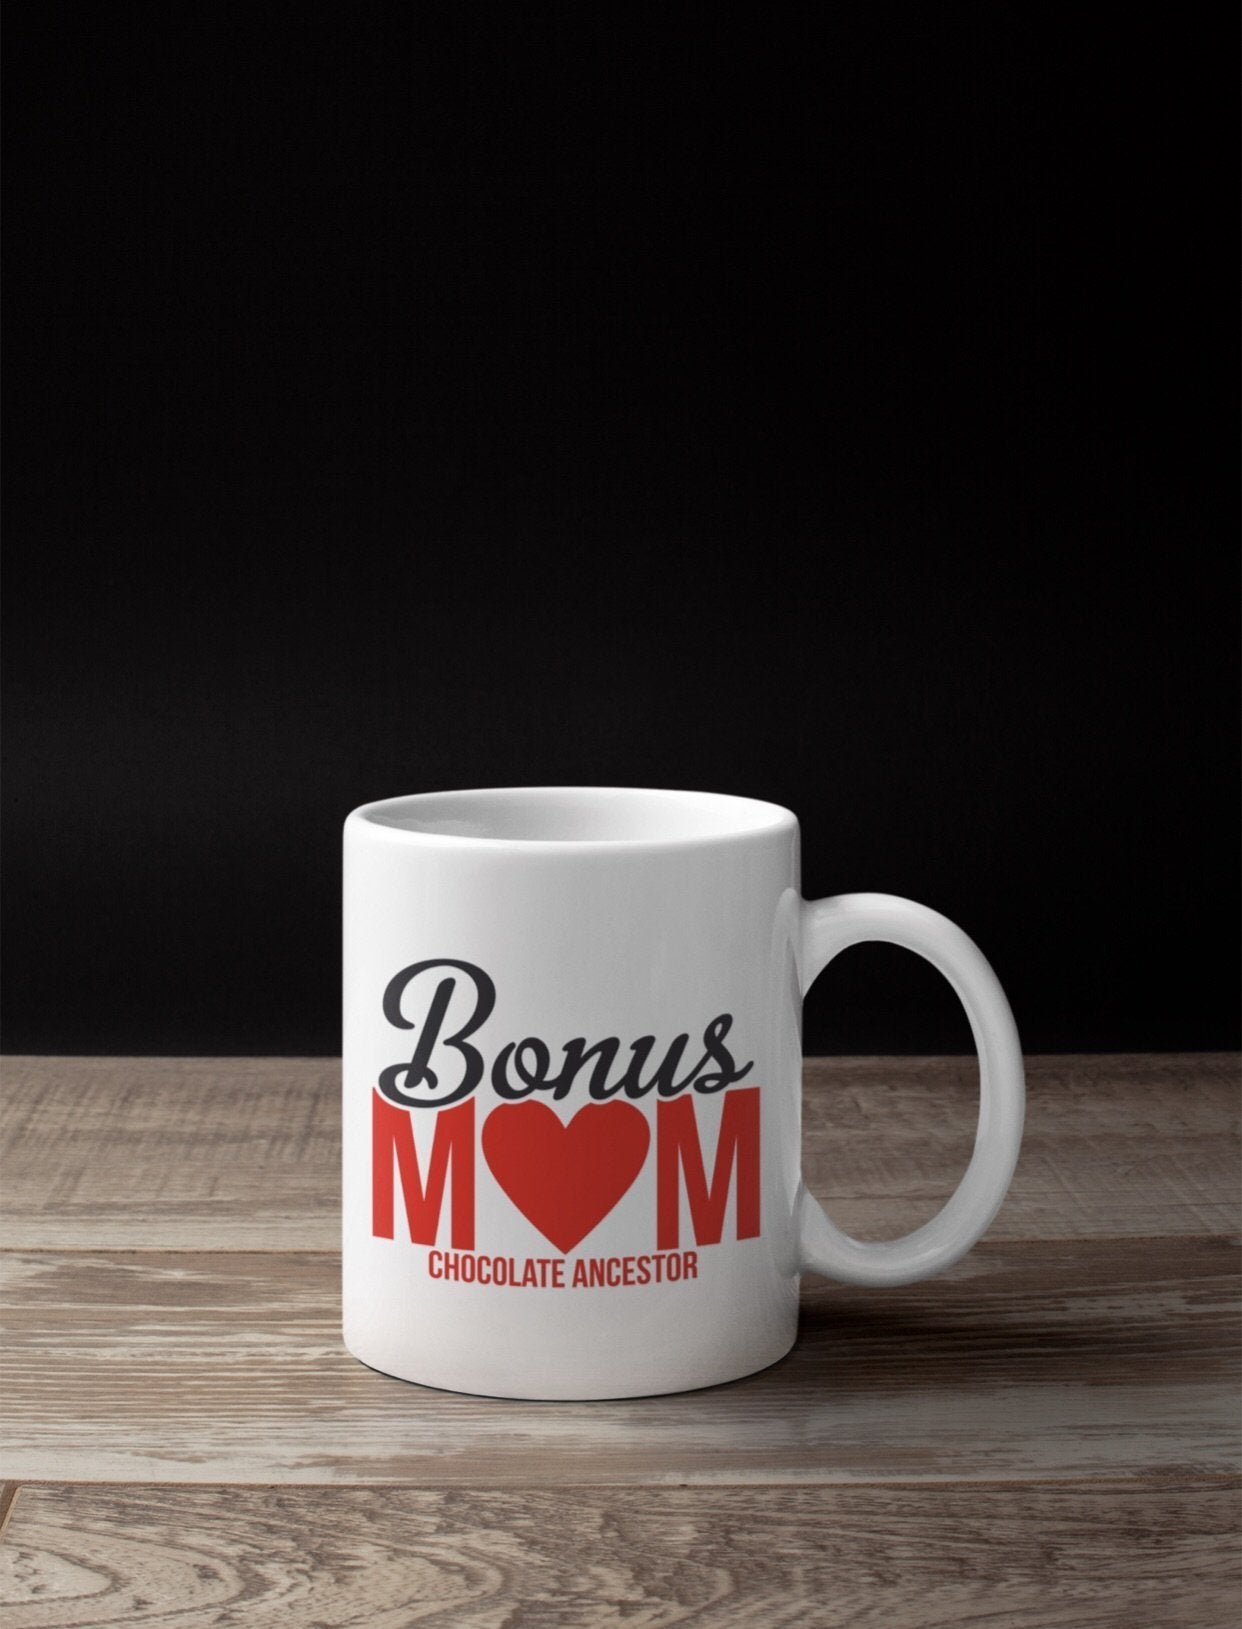 Bonus Mom Mug - Chocolate Ancestor